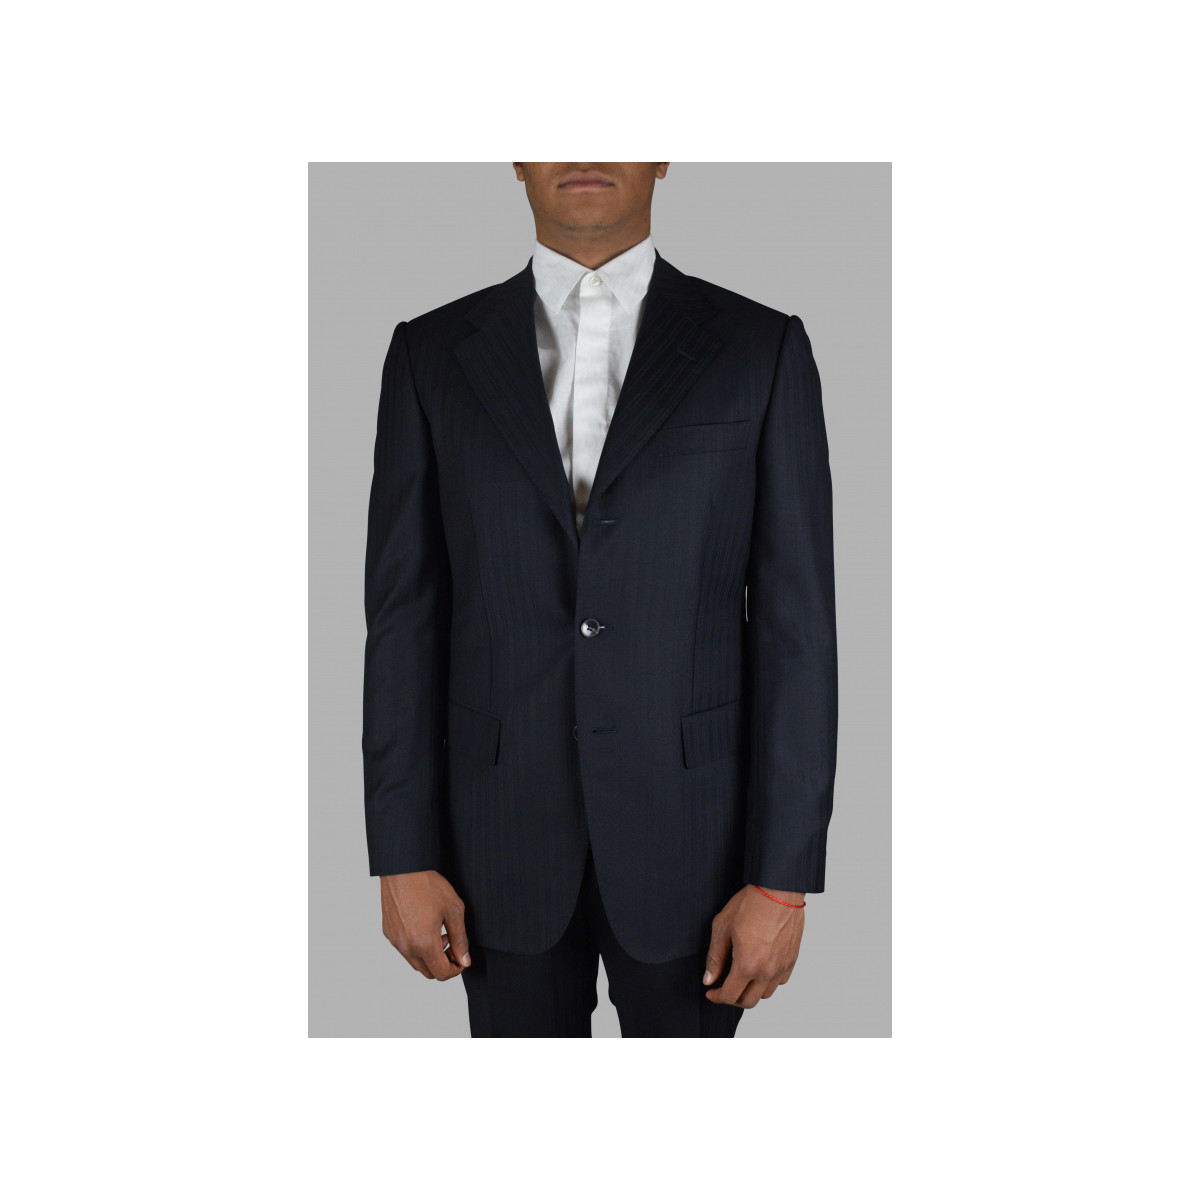 Vêtements Homme CostumeGucci tweed button-front blazer Costume Bleu